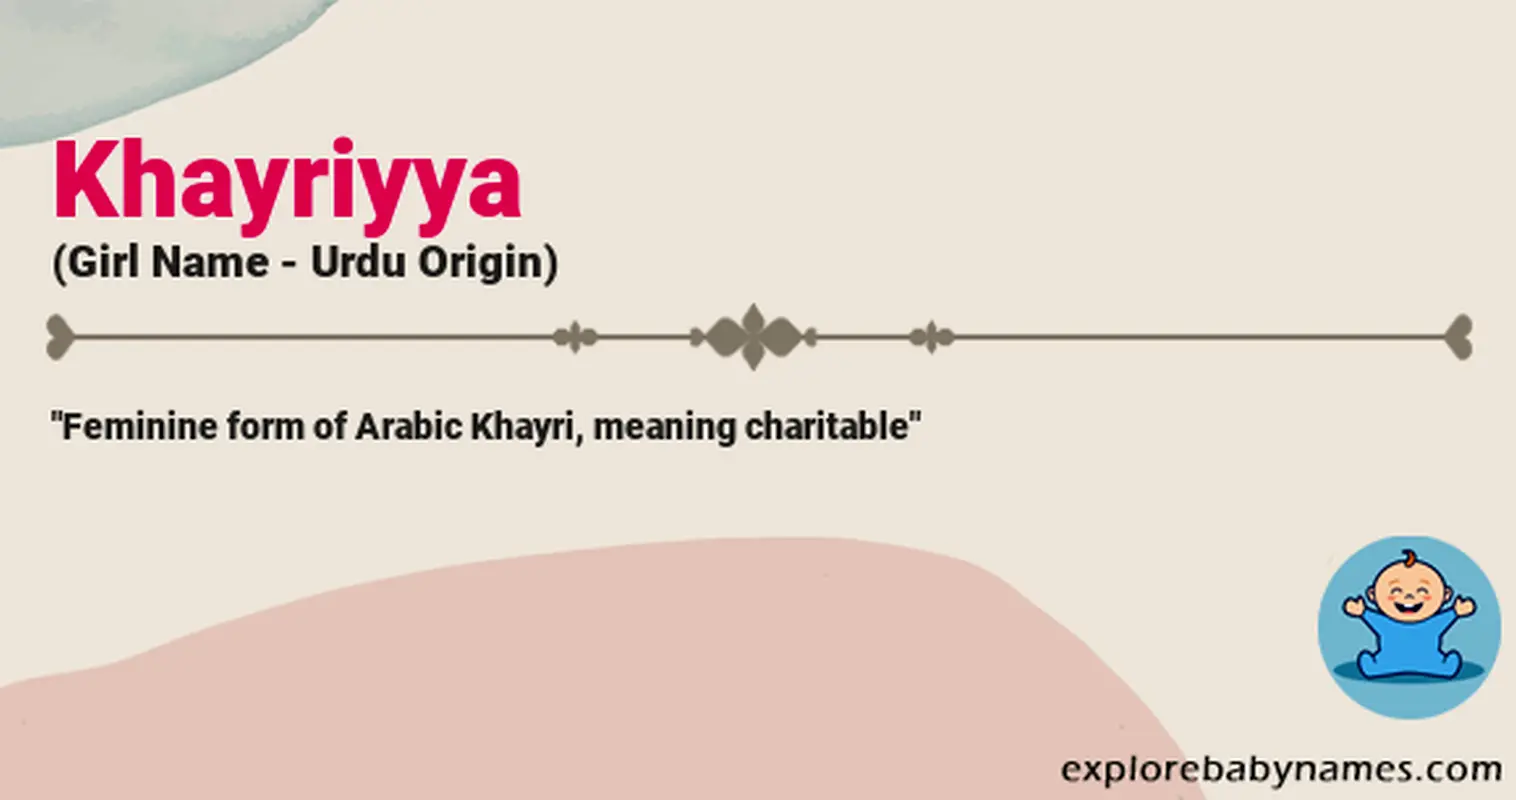 Meaning of Khayriyya